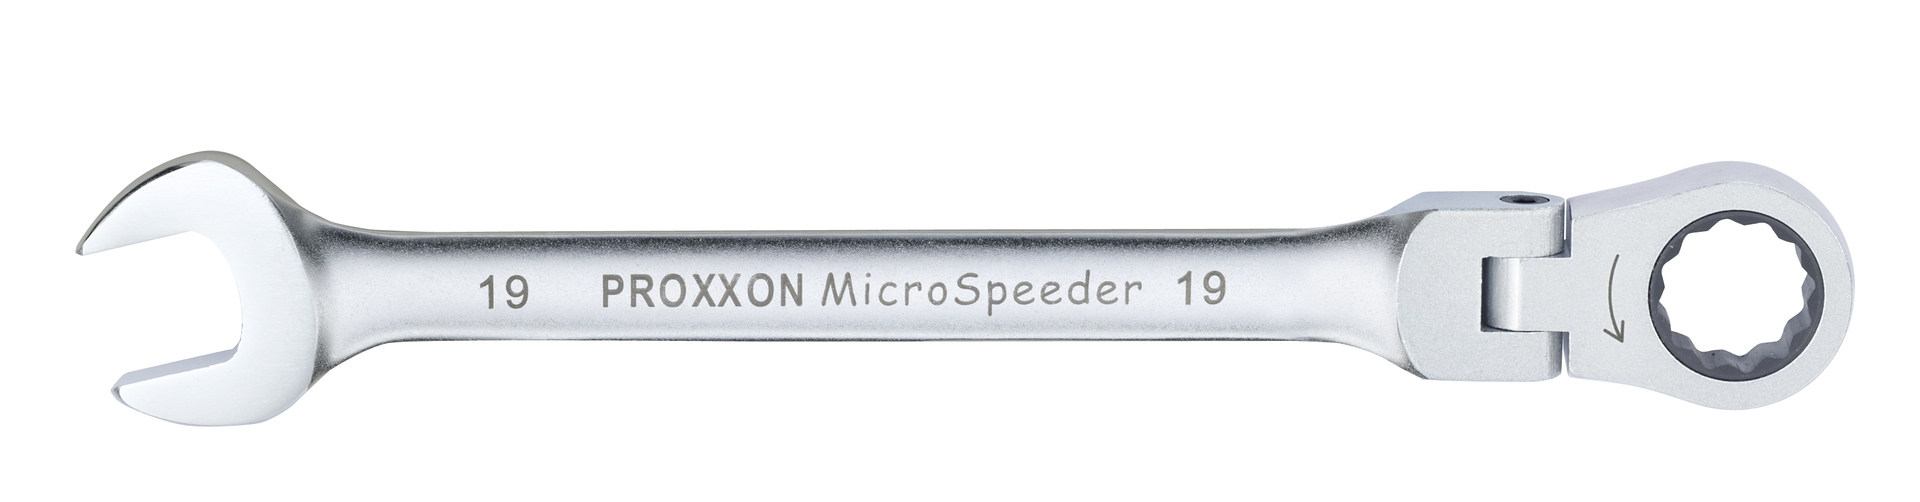 PROXXON MICRO-Combispeeder mit Gelenk